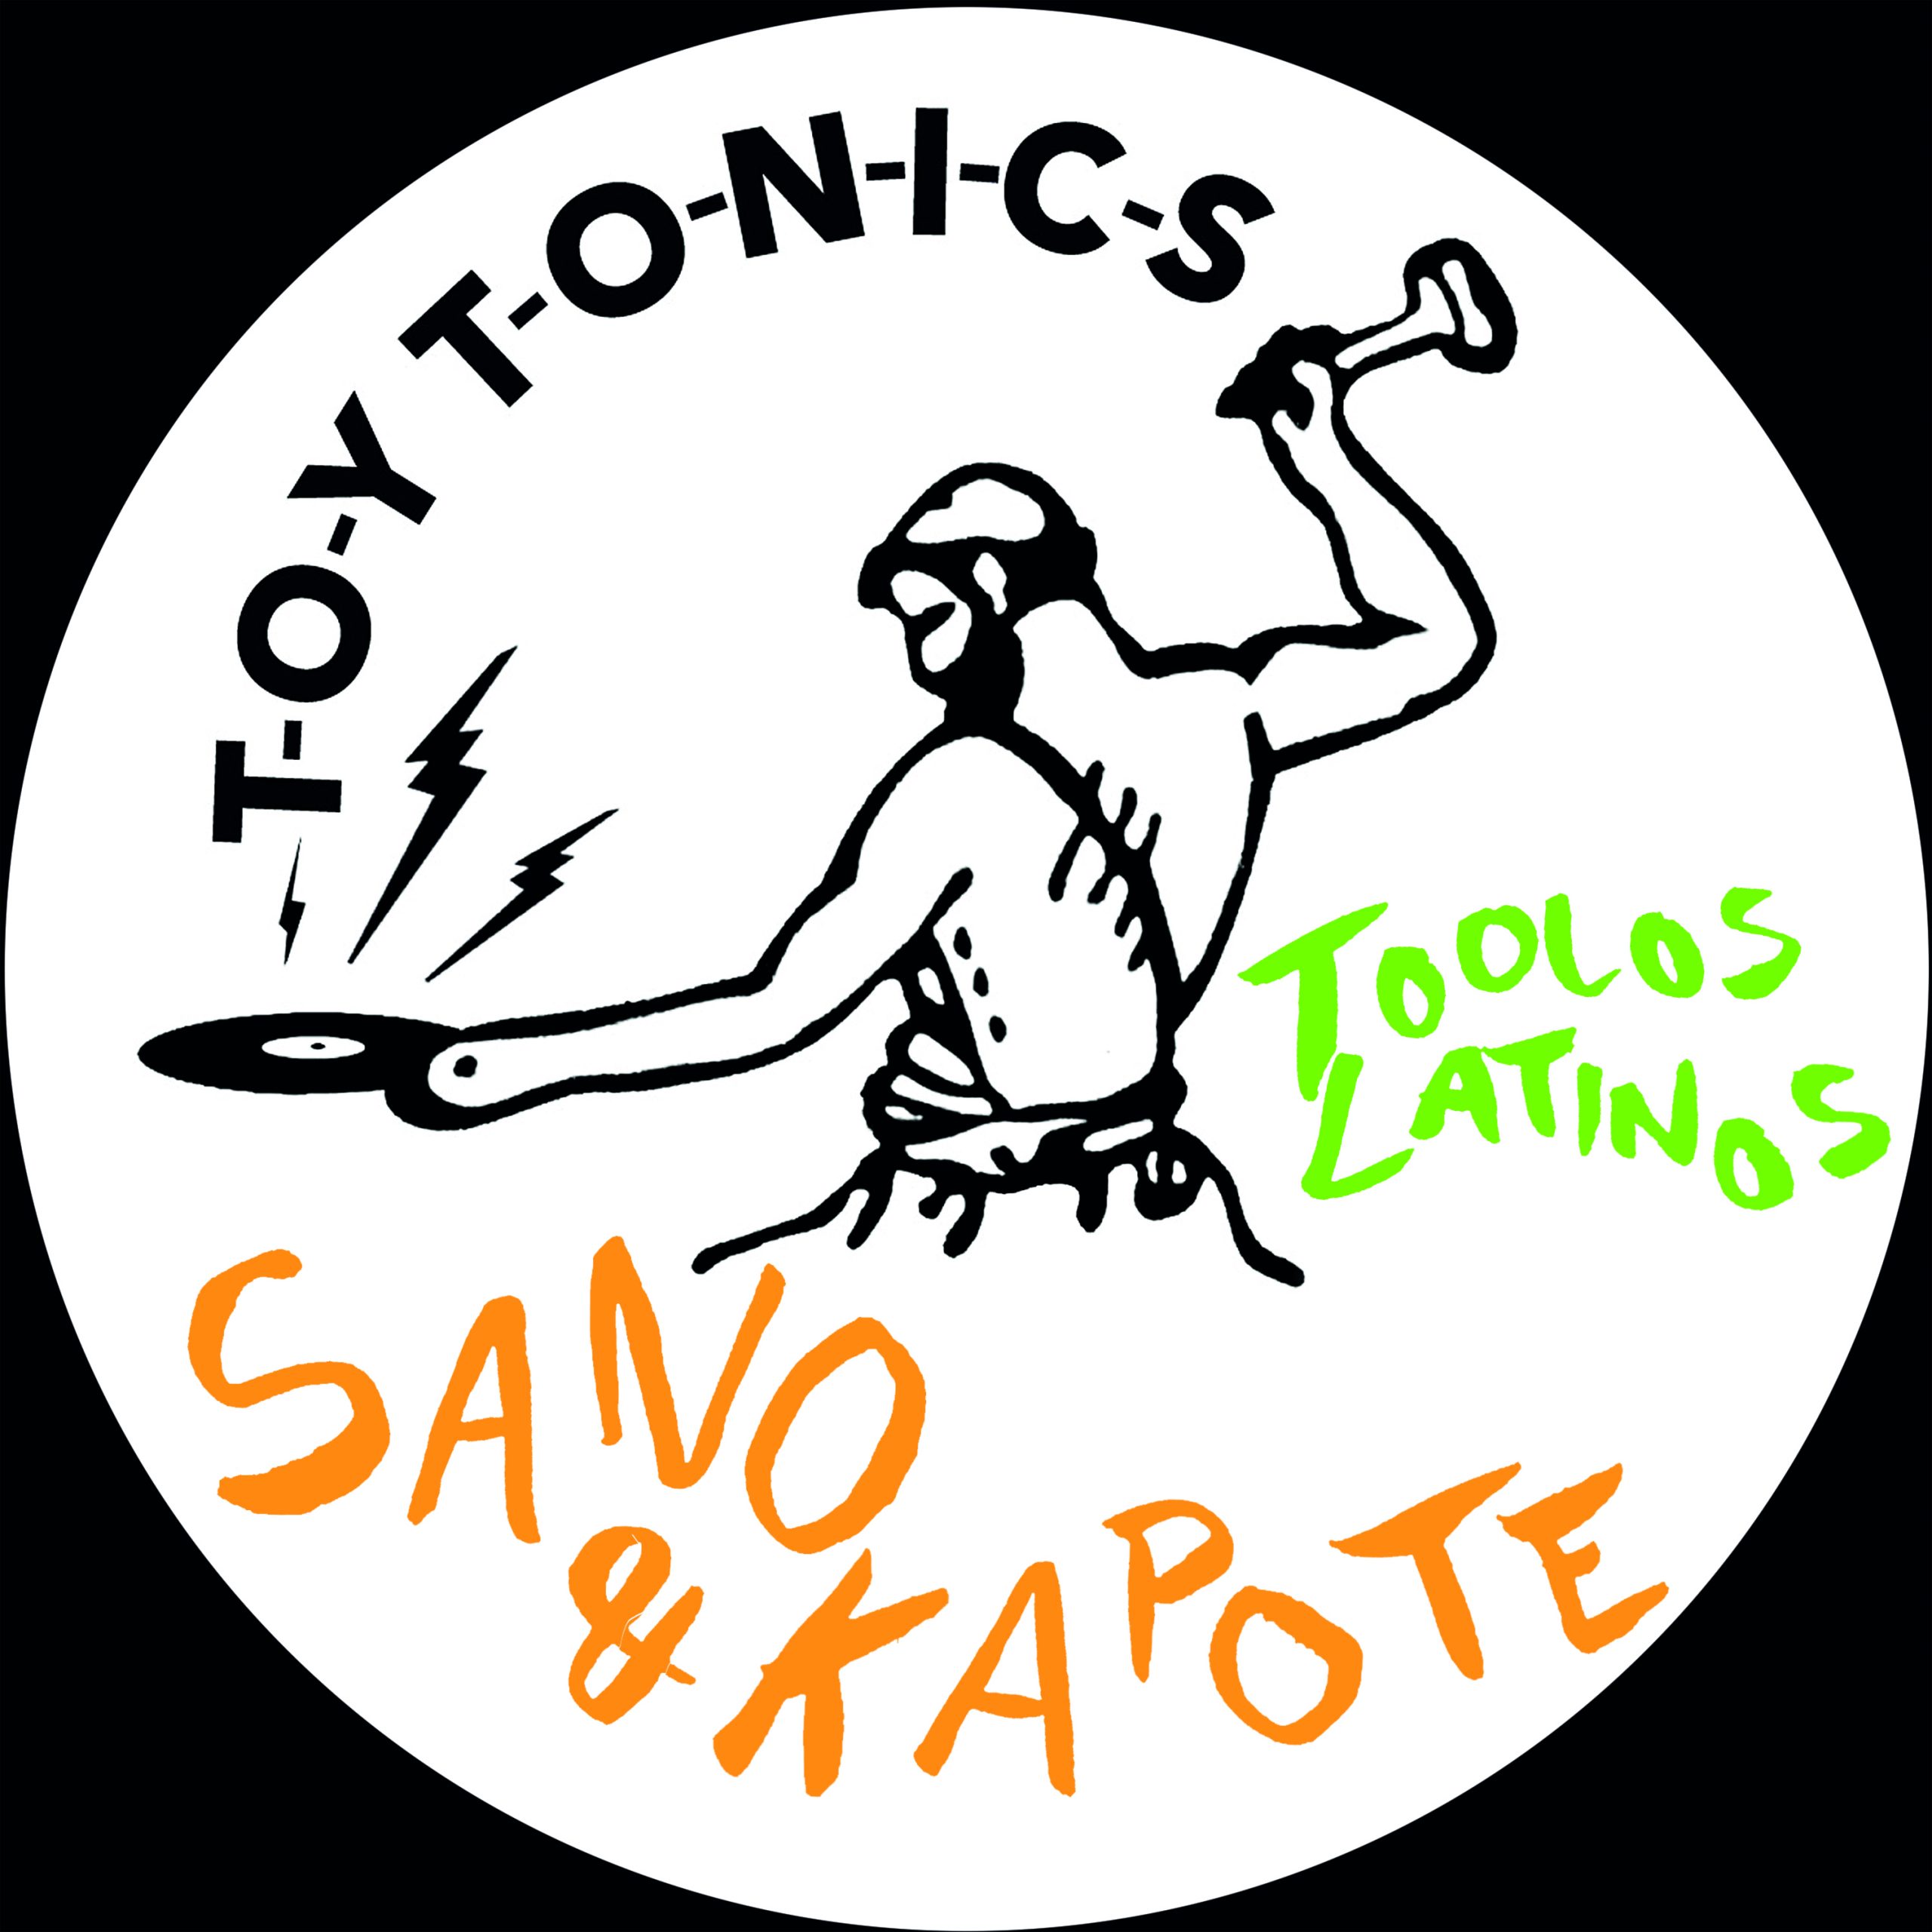 Sano & Kapote - Toolos Latinos [TOYT098]